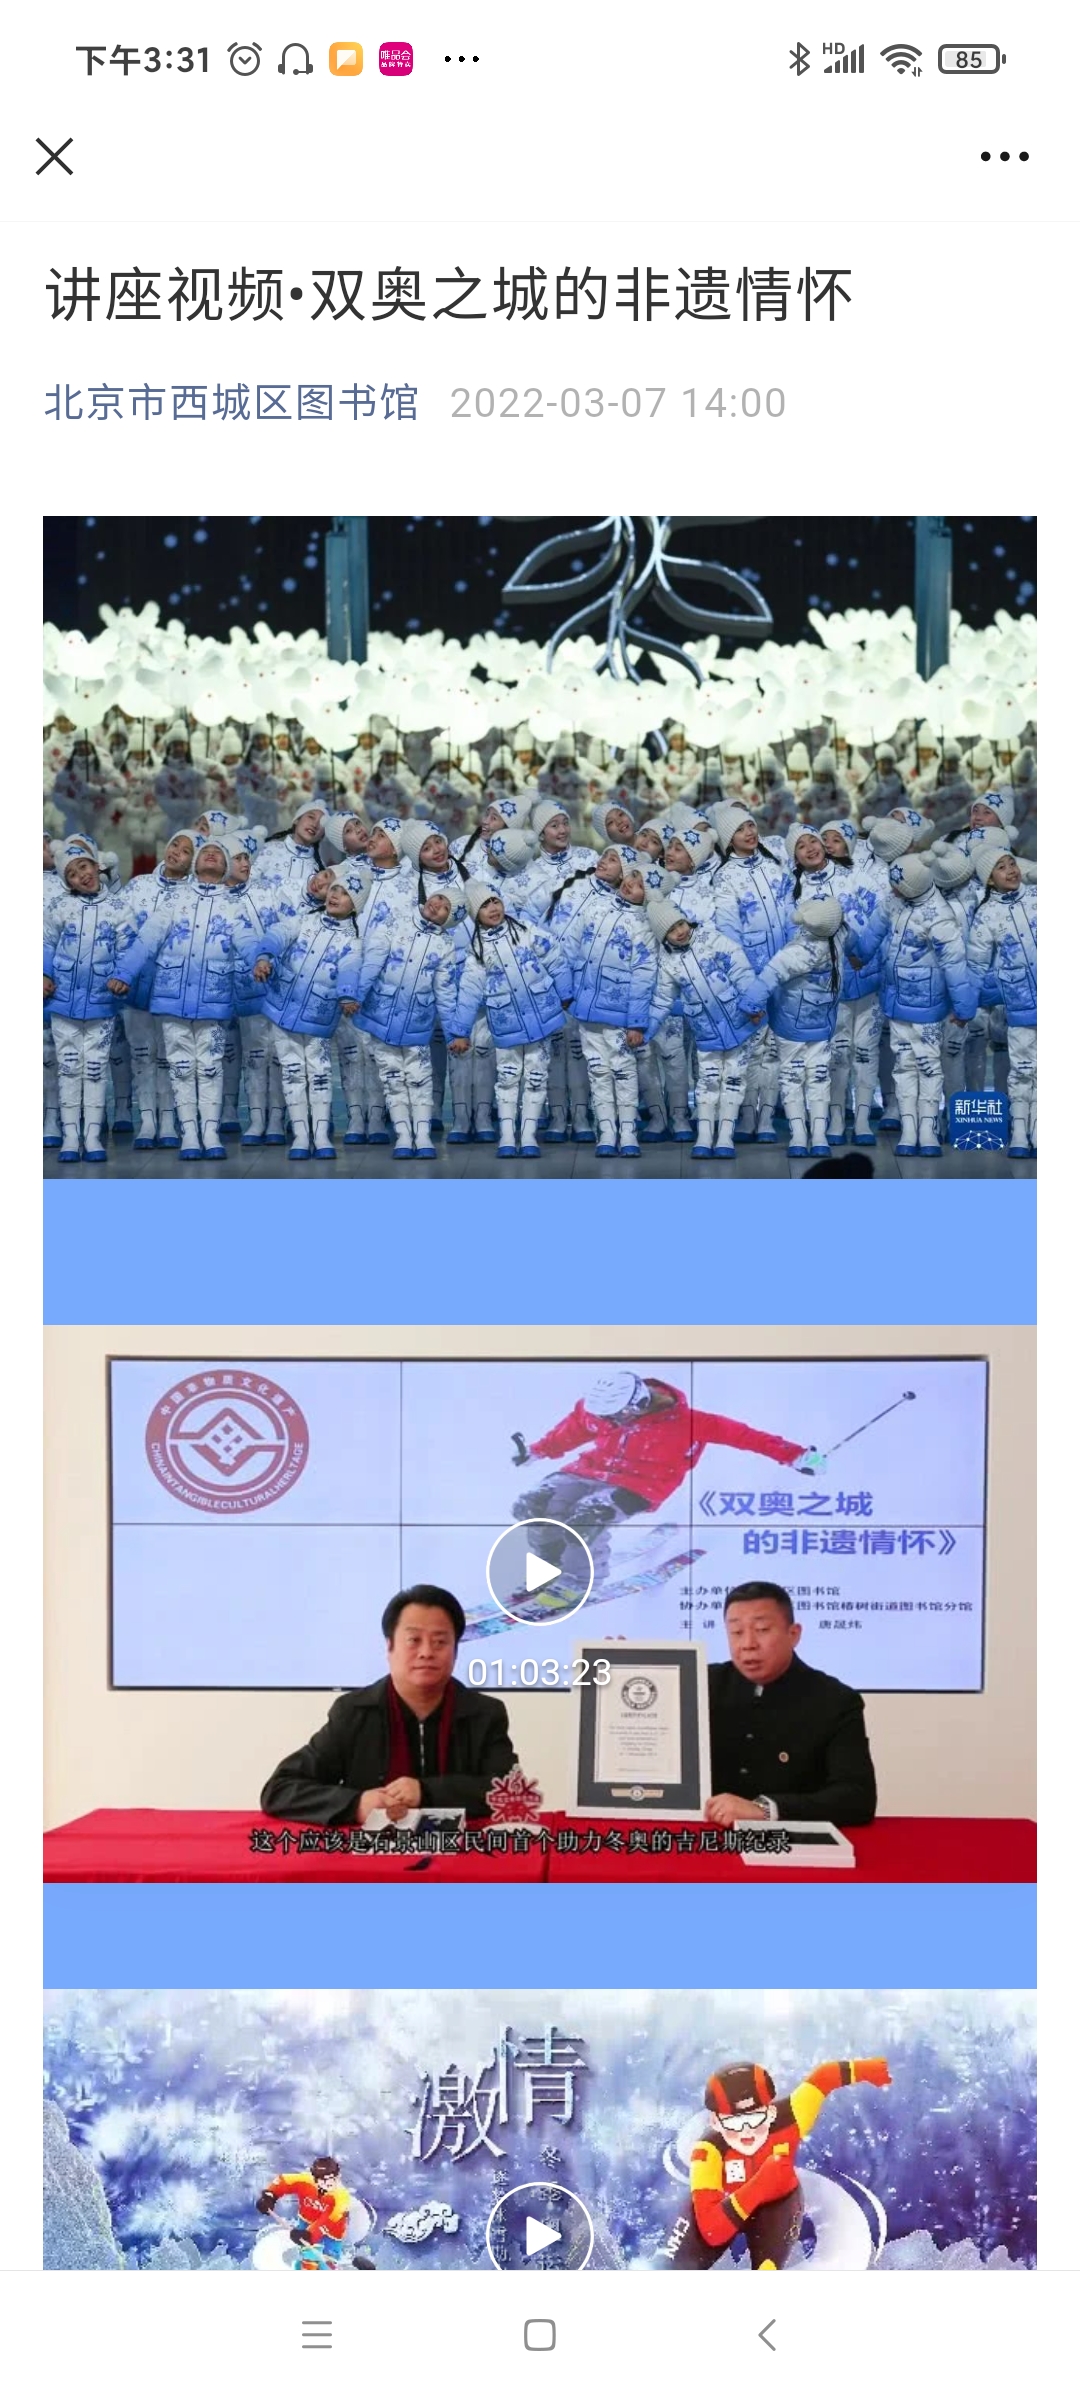 2022-03-07非遗艺术助力北京冬奥 文创产品温暖八方来客5.jpg